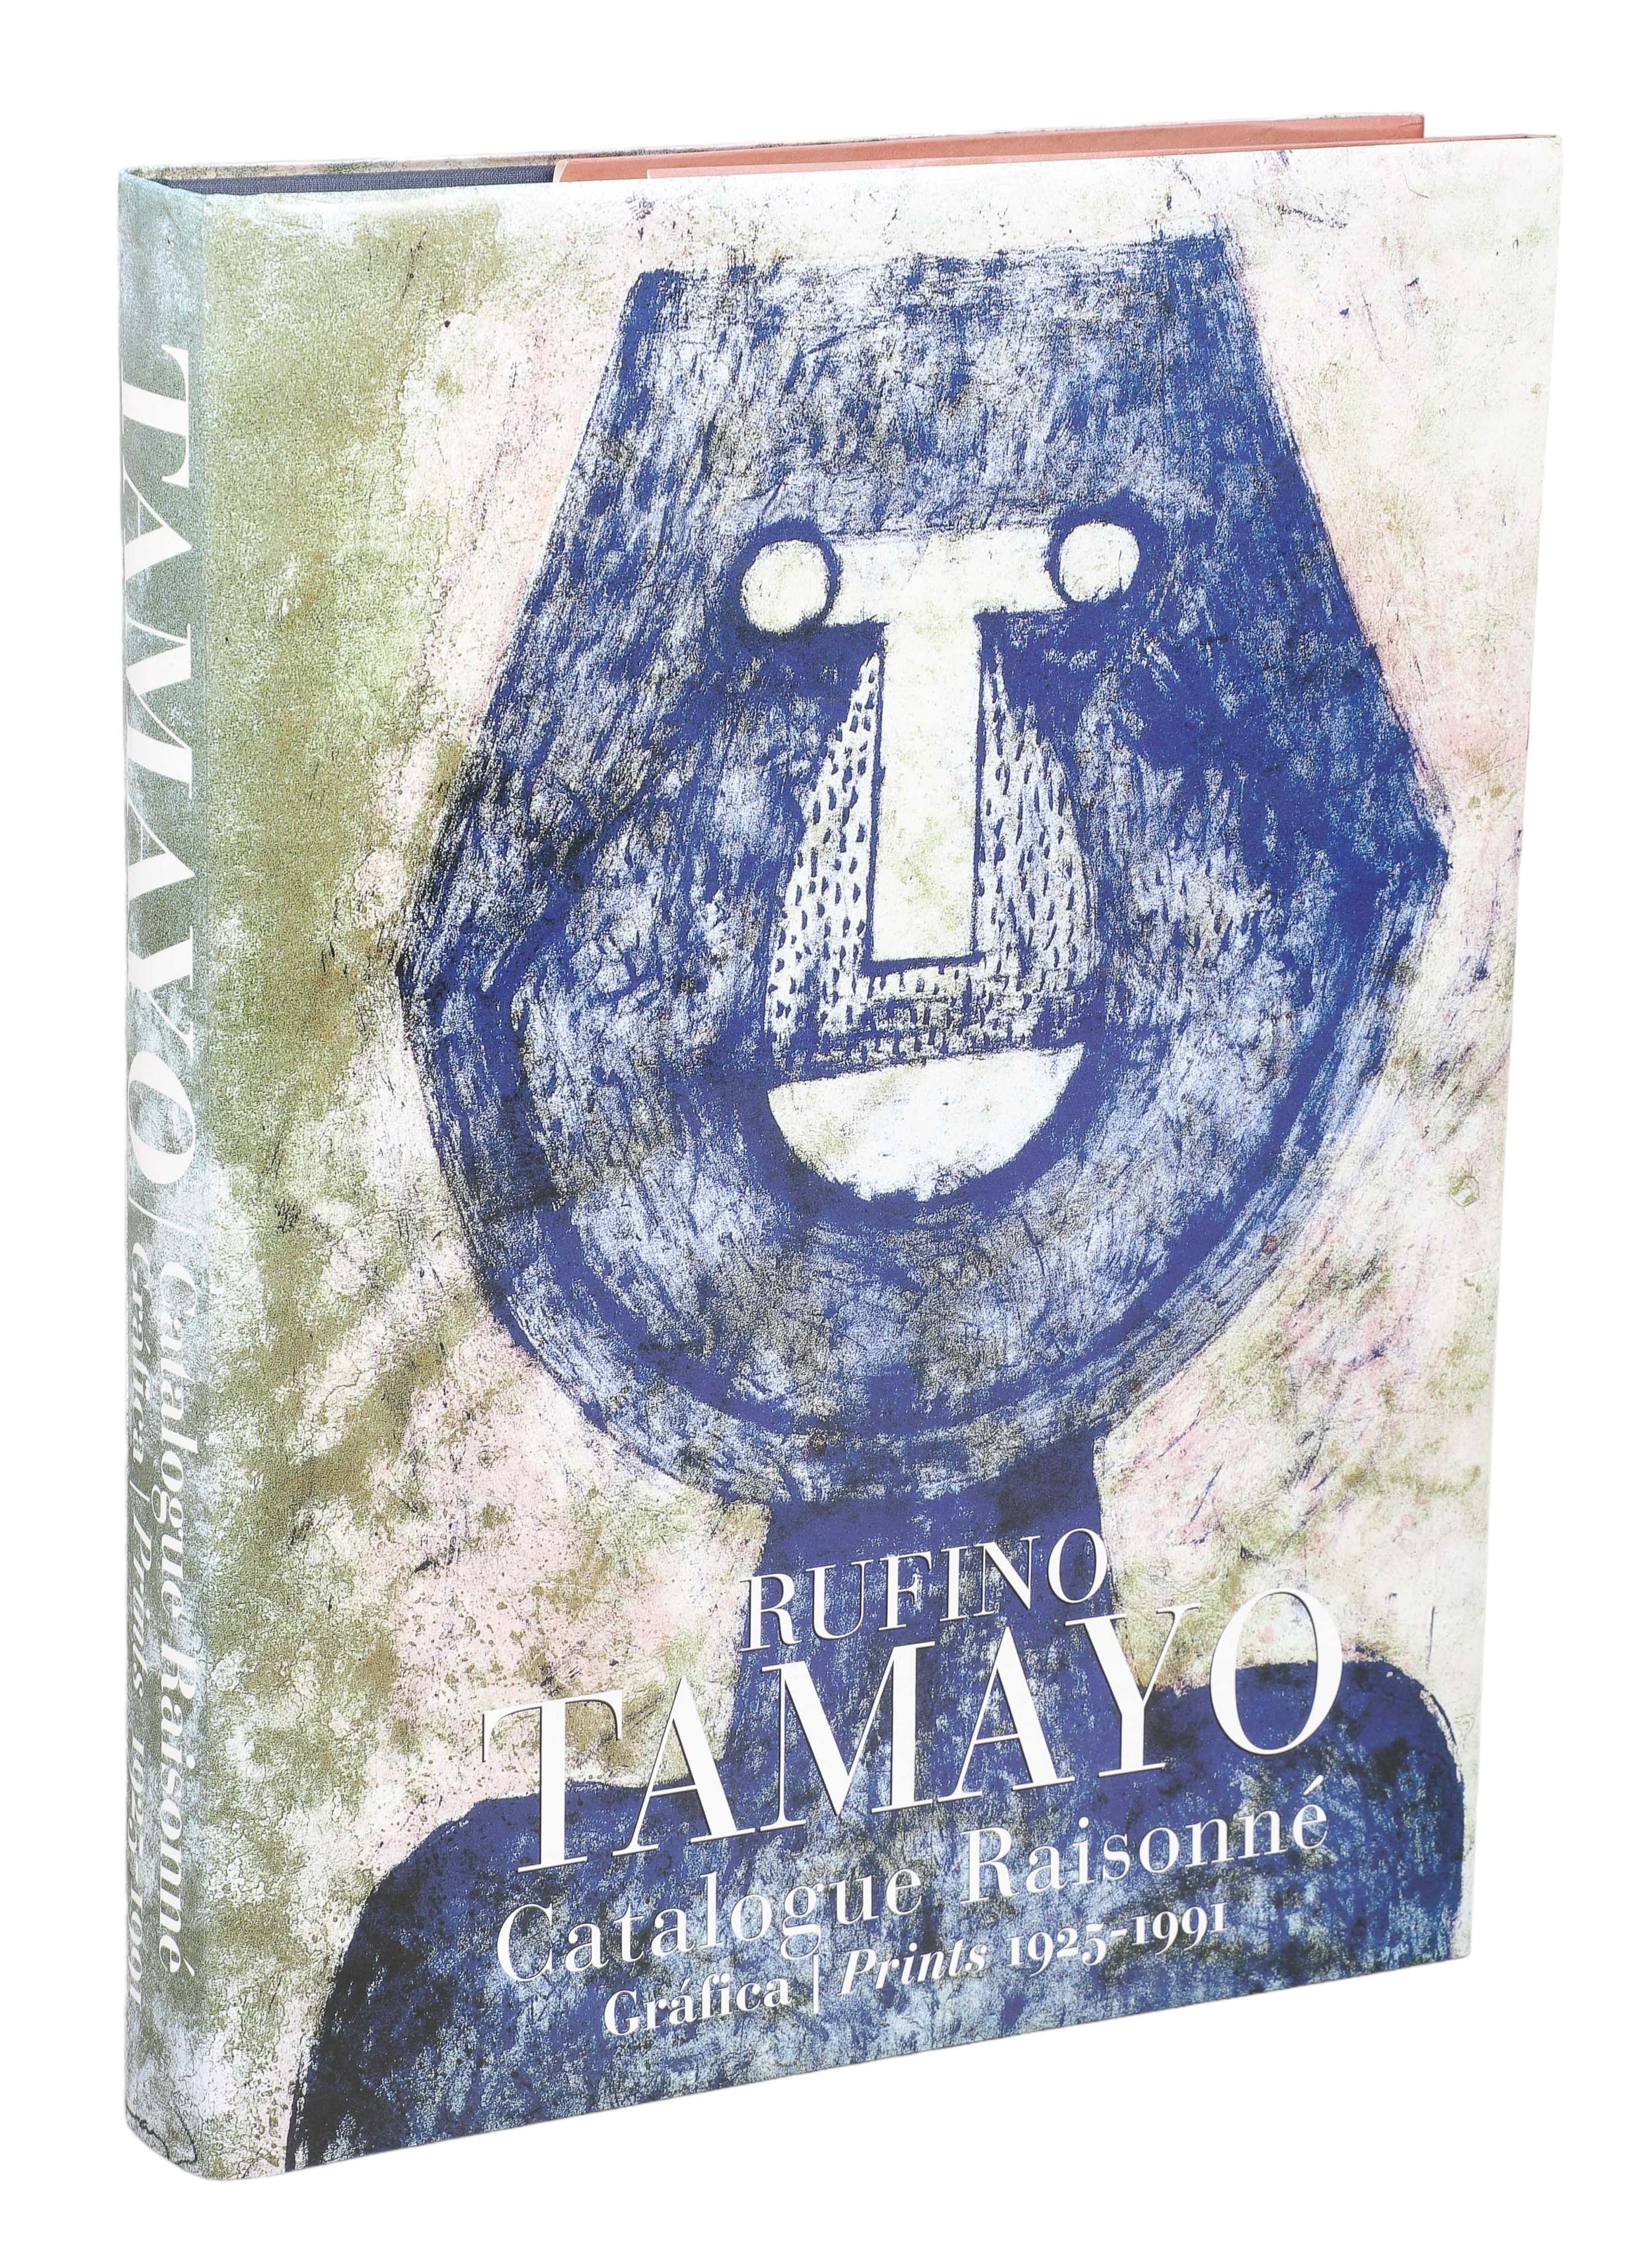 A copy of Rufino Tamayo: Catalogue